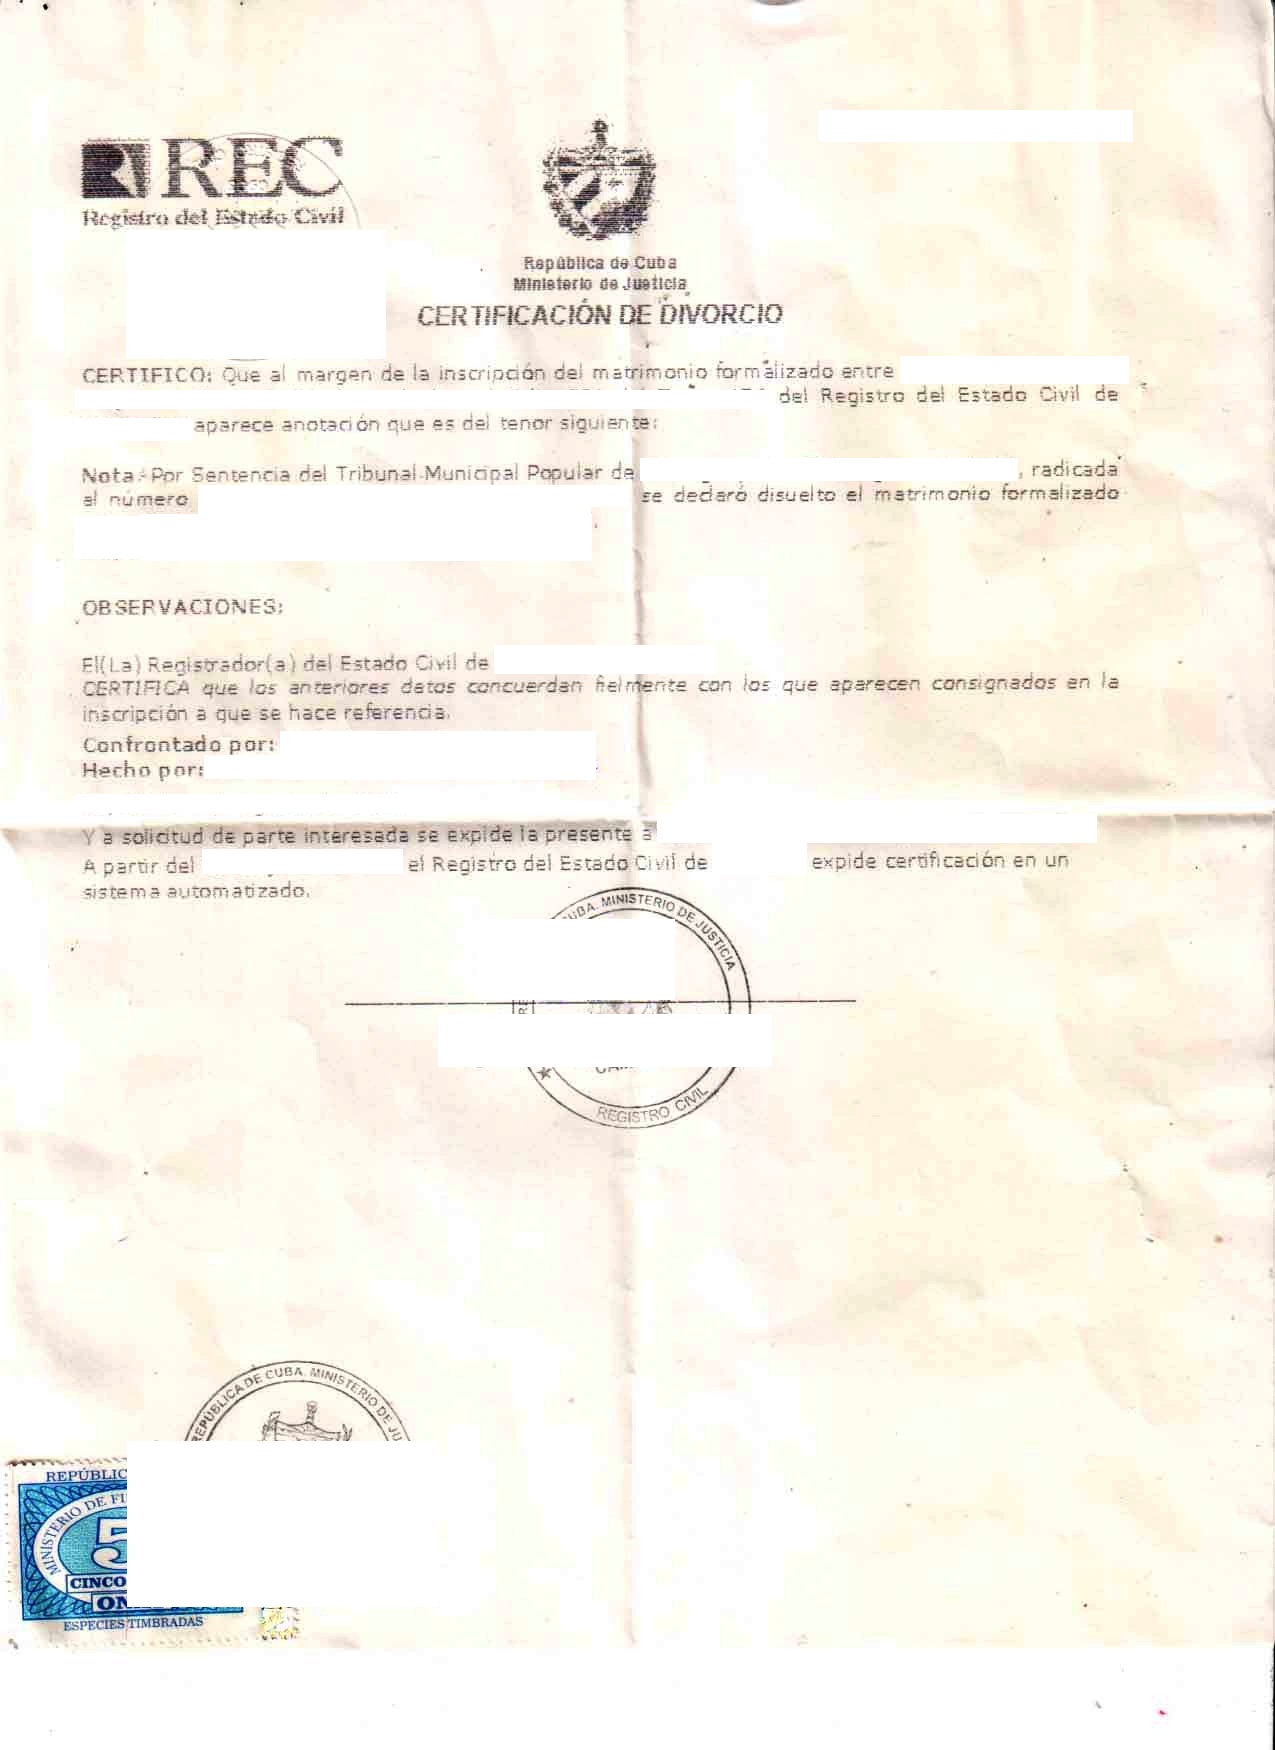 Cuban divorce certificate